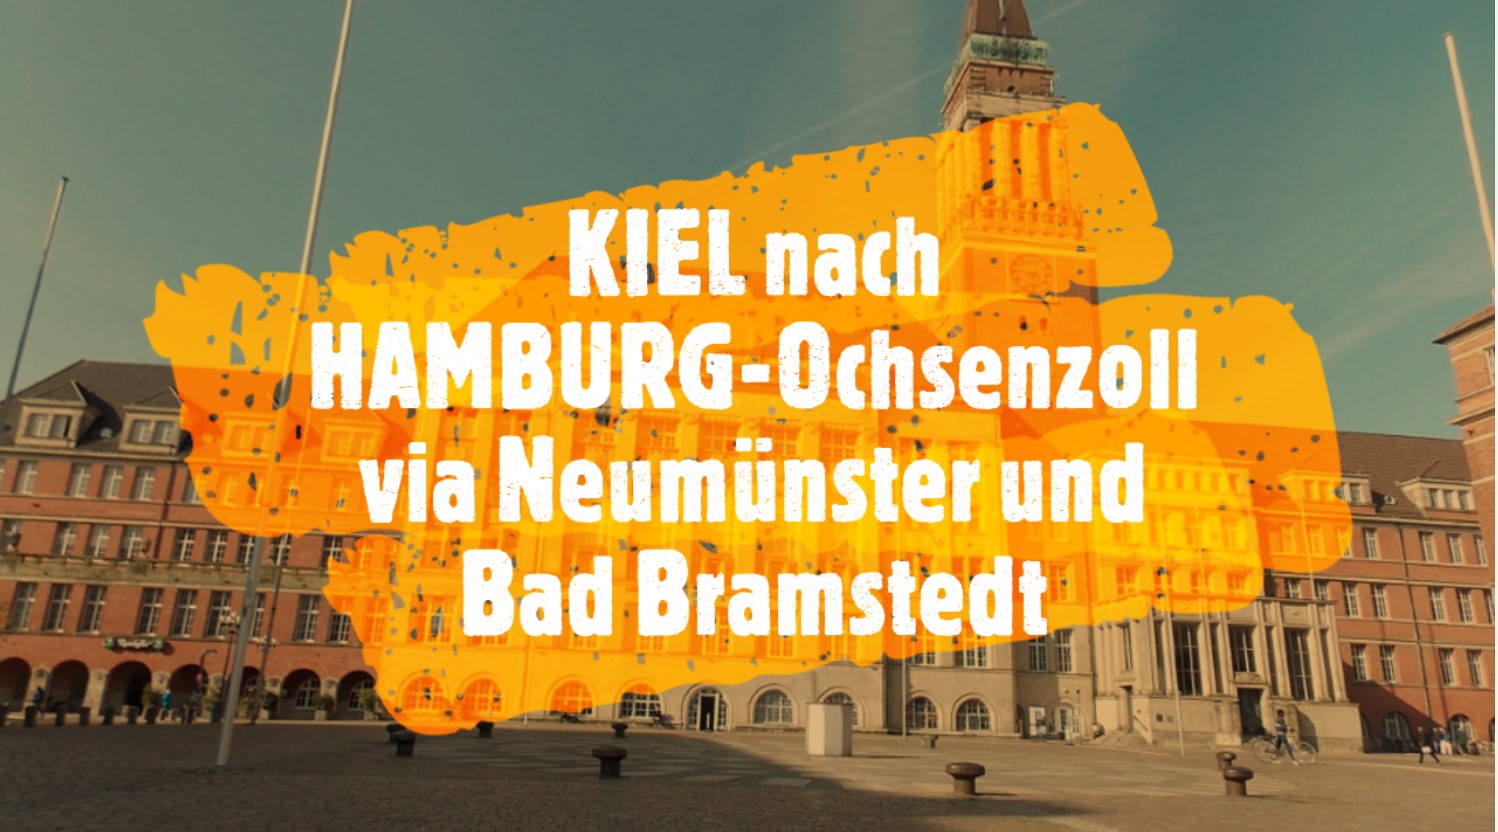 KIEL - HAMBURG-Ochsenzoll